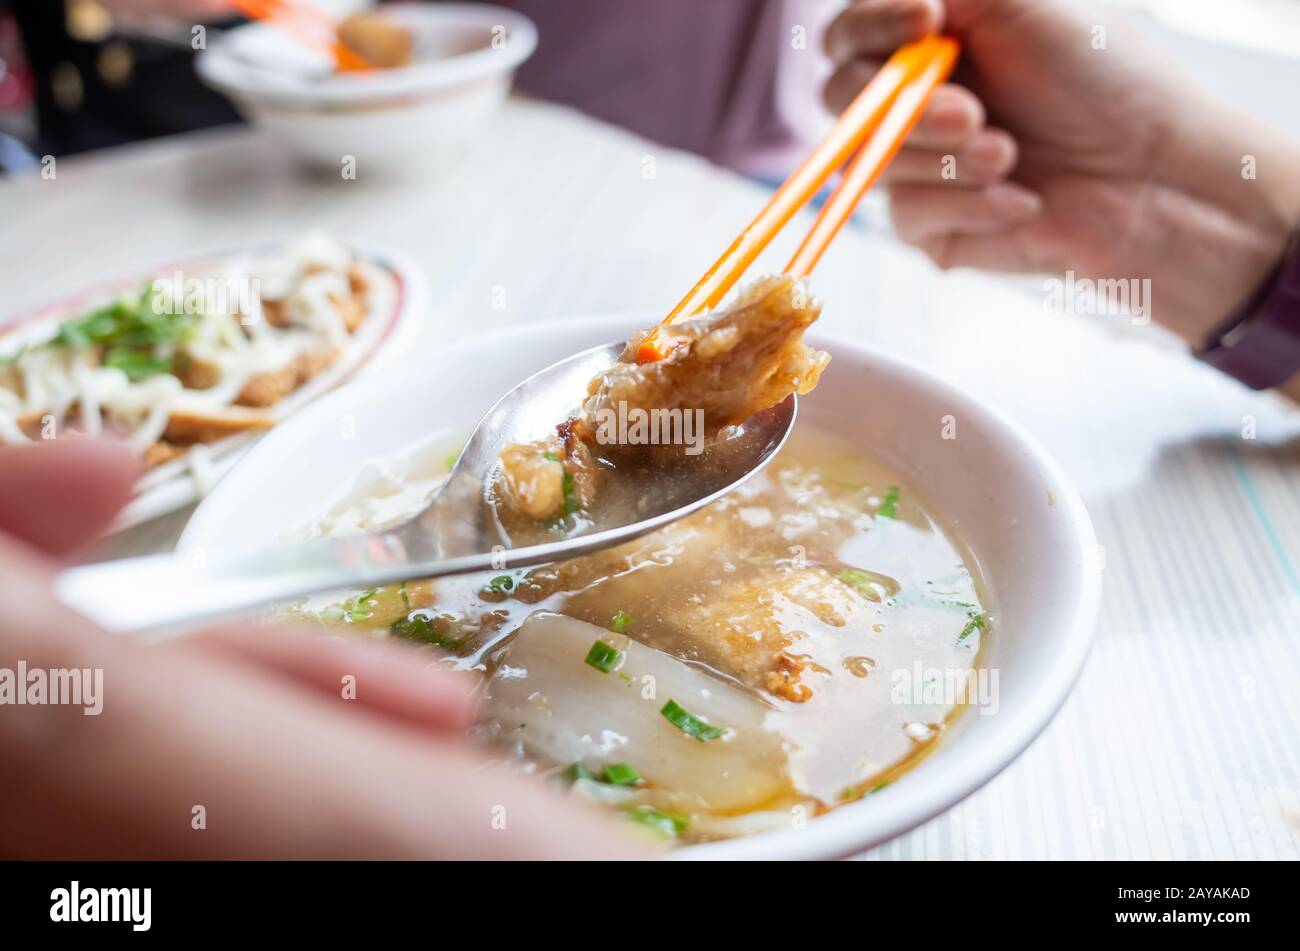 En-cas taïwanais de soupe de poisson épaisse Banque D'Images